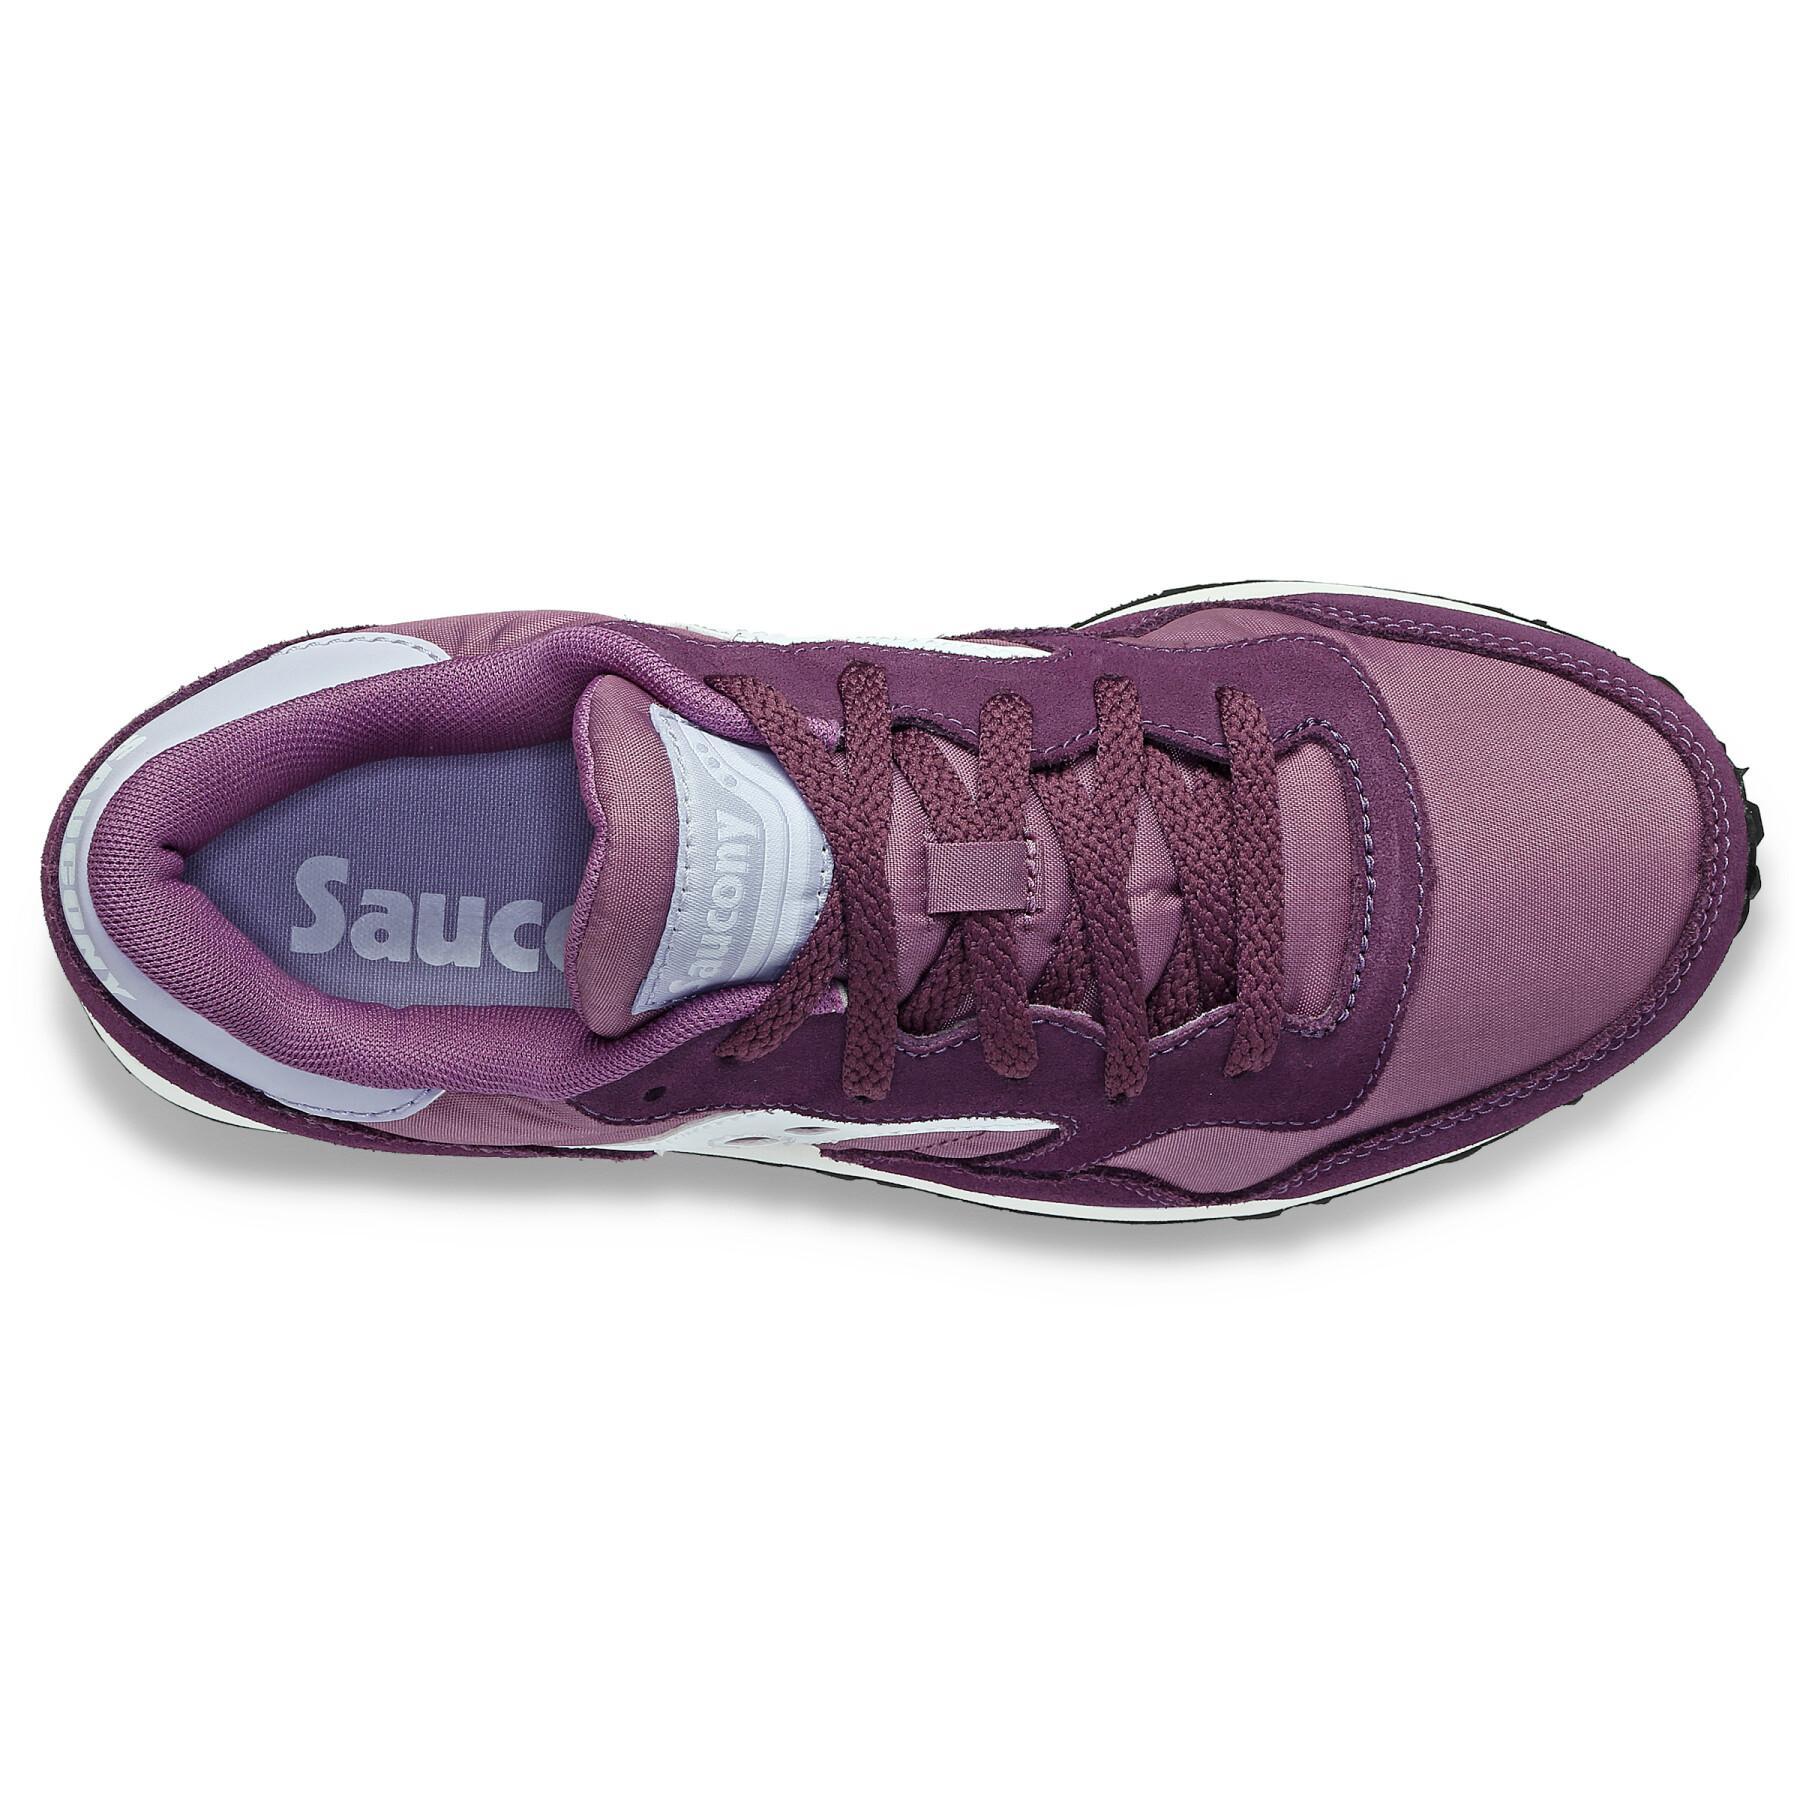 Zapatillas de deporte para mujer Saucony DXN Trainer